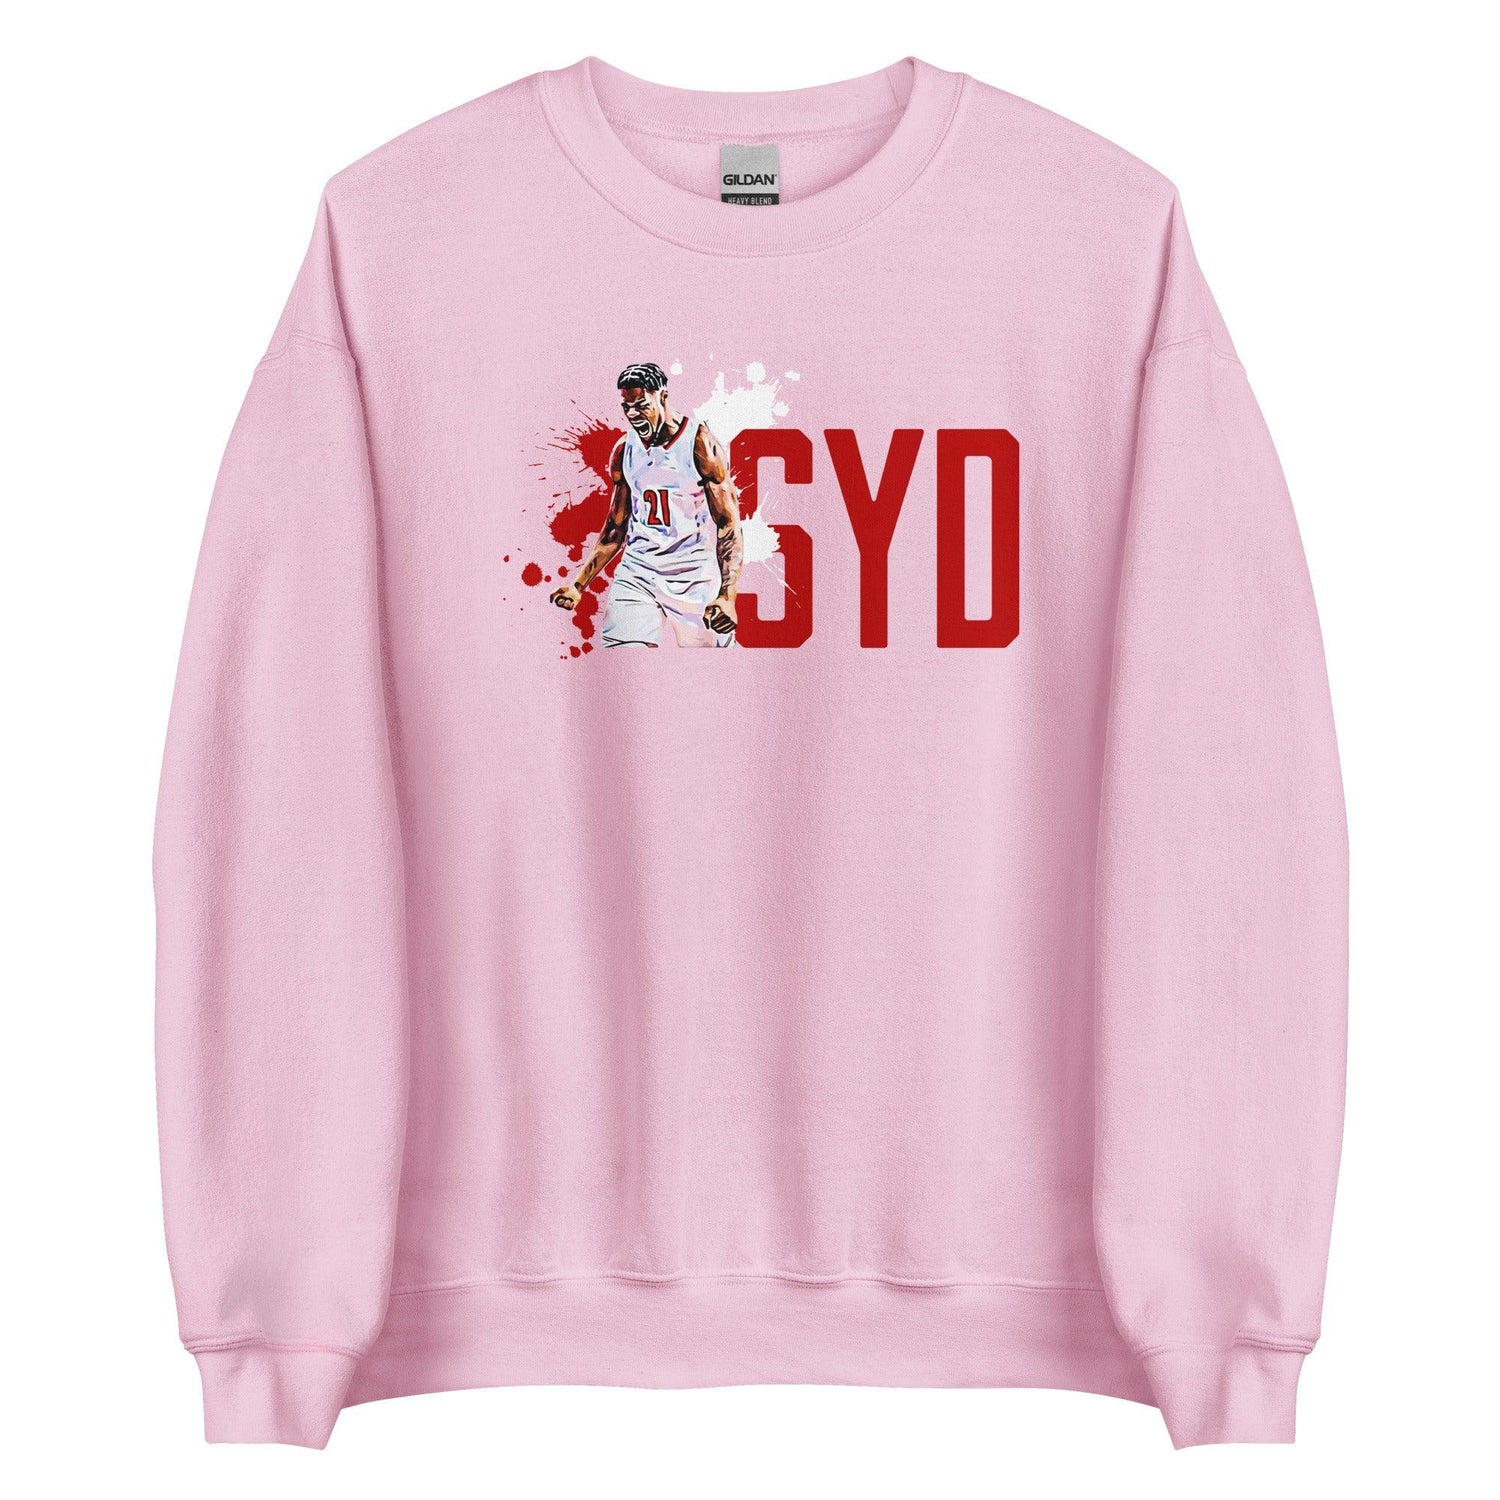 Sydney Curry "SYD" Sweatshirt - Fan Arch